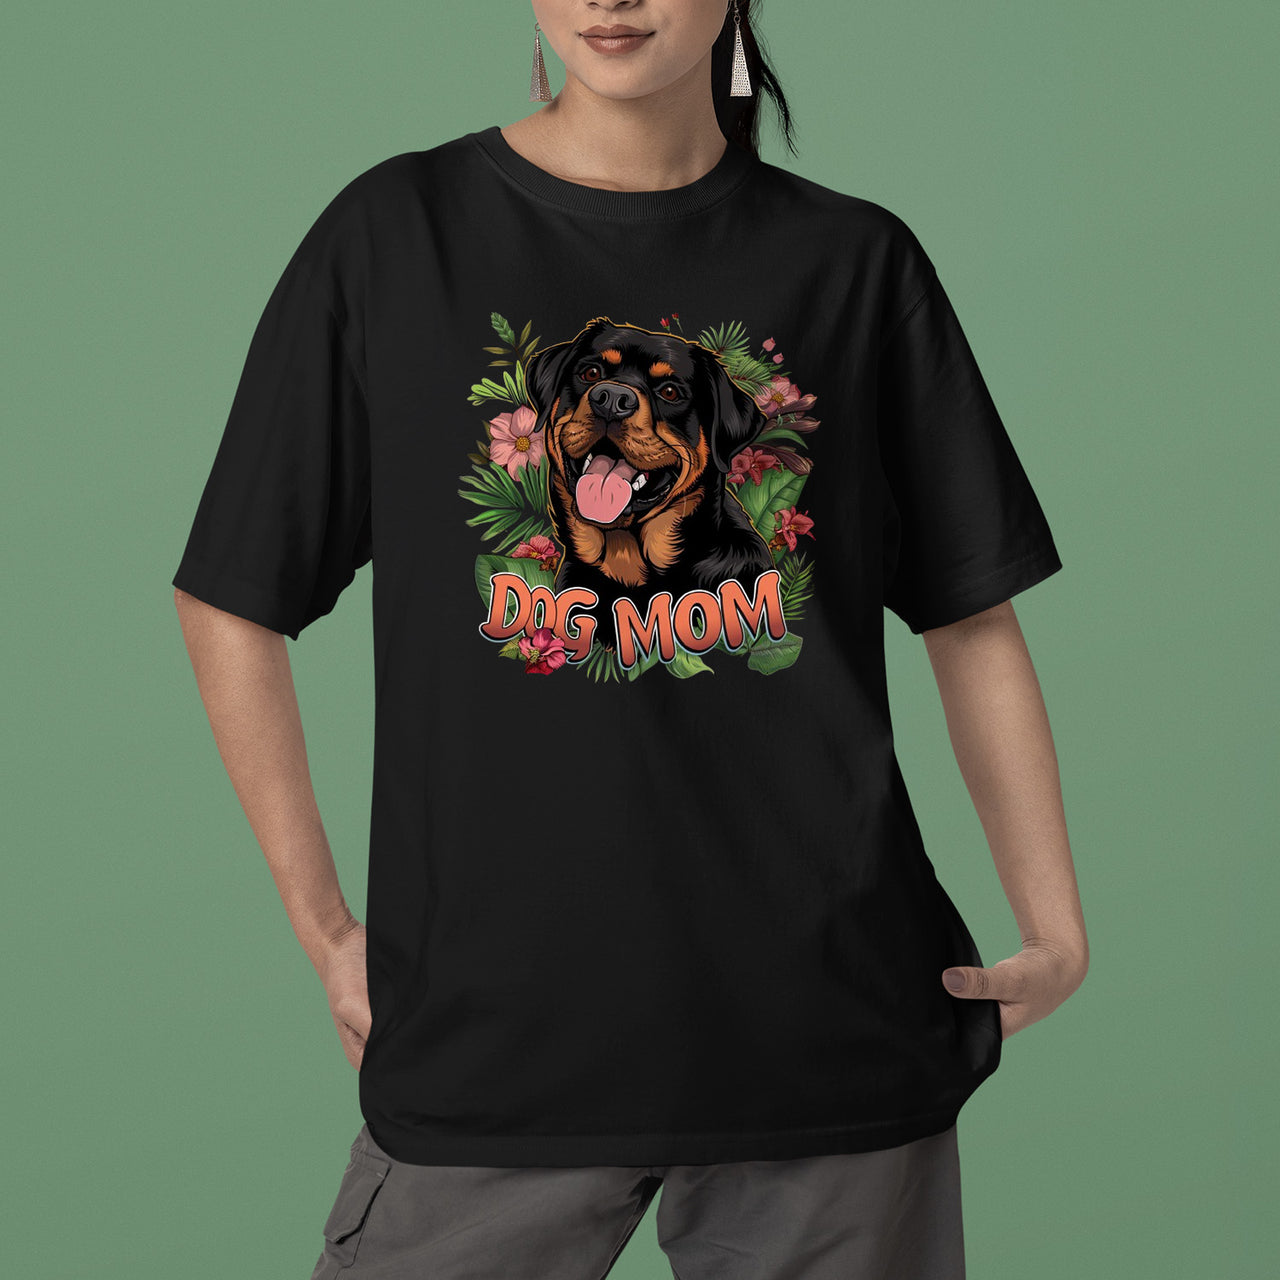 Rottweiler Dog T-shirt, Pet Lover Shirt, Dog Lover Shirt, Dog Mom T-Shirt, Dog Owner Shirt, Gift For Dog Mom, Funny Dog Shirts, Women Dog T-Shirt, Mother's Day Gift, Dog Lover Wife Gifts, Dog Shirt